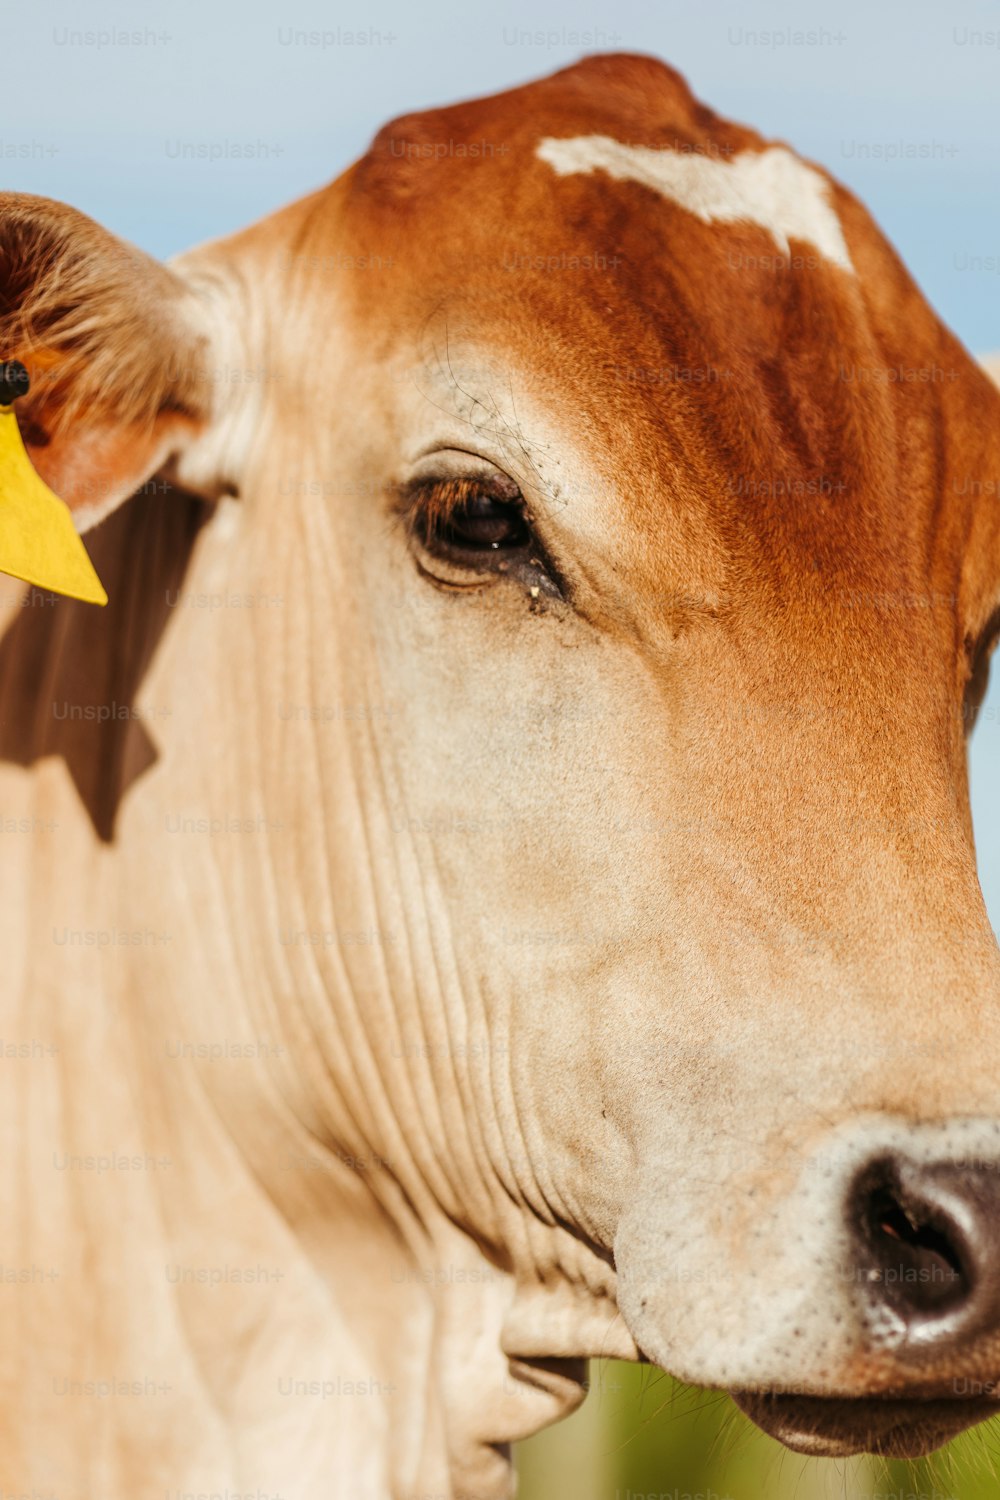 uma vaca marrom e branca com uma etiqueta amarela na orelha